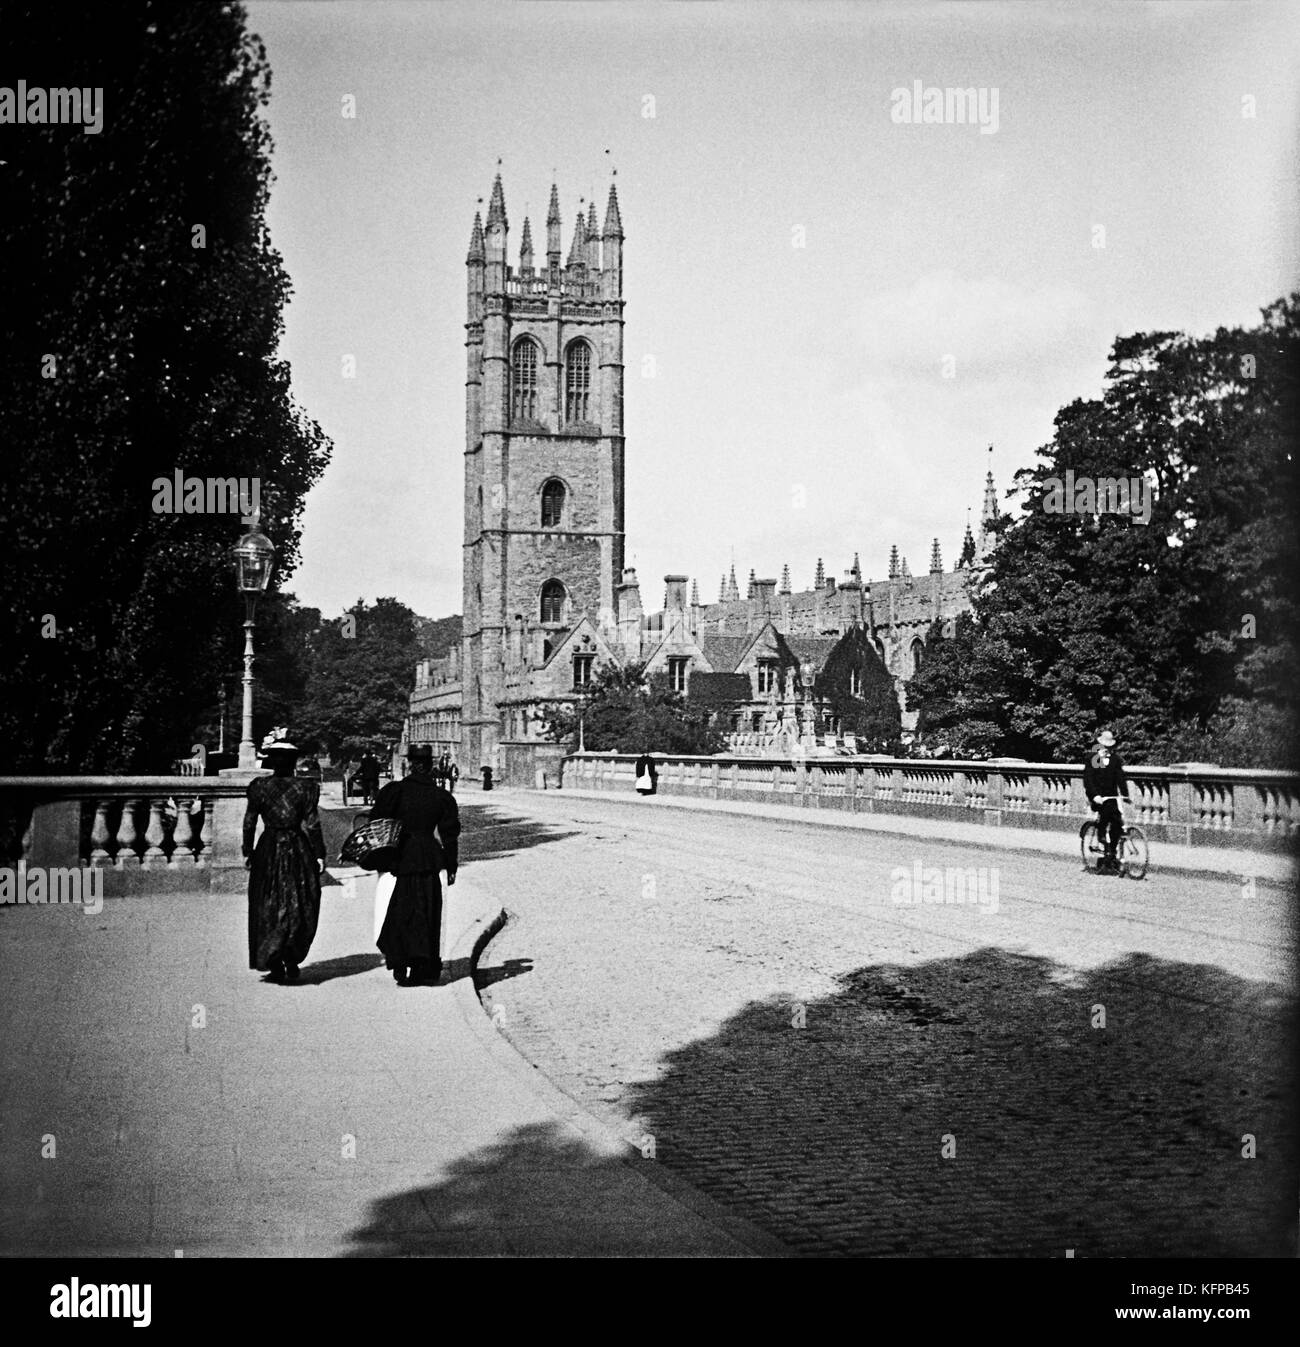 Städte und Dörfer in Oxfordshire. Historische Fotografien aus einem anderen Jahrhundert, 1900. Dies ist das britische England Europa. Stockfoto